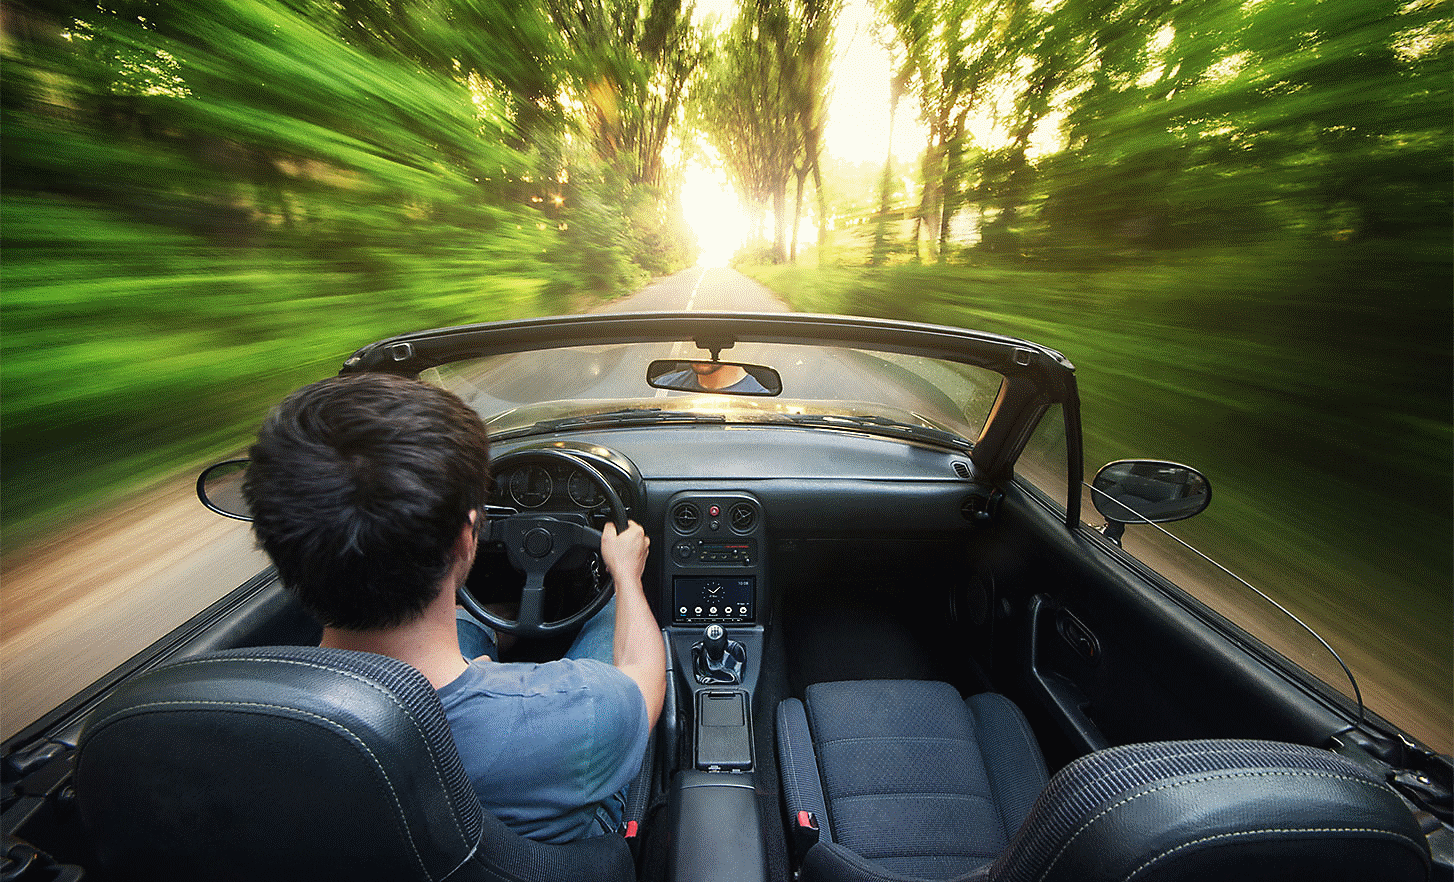 Snímek osoby řídící kabriolet jedoucí vysokou rychlostí po silnici lemované stromy. Přehrávač XAV-AX4050 je součástí palubní desky